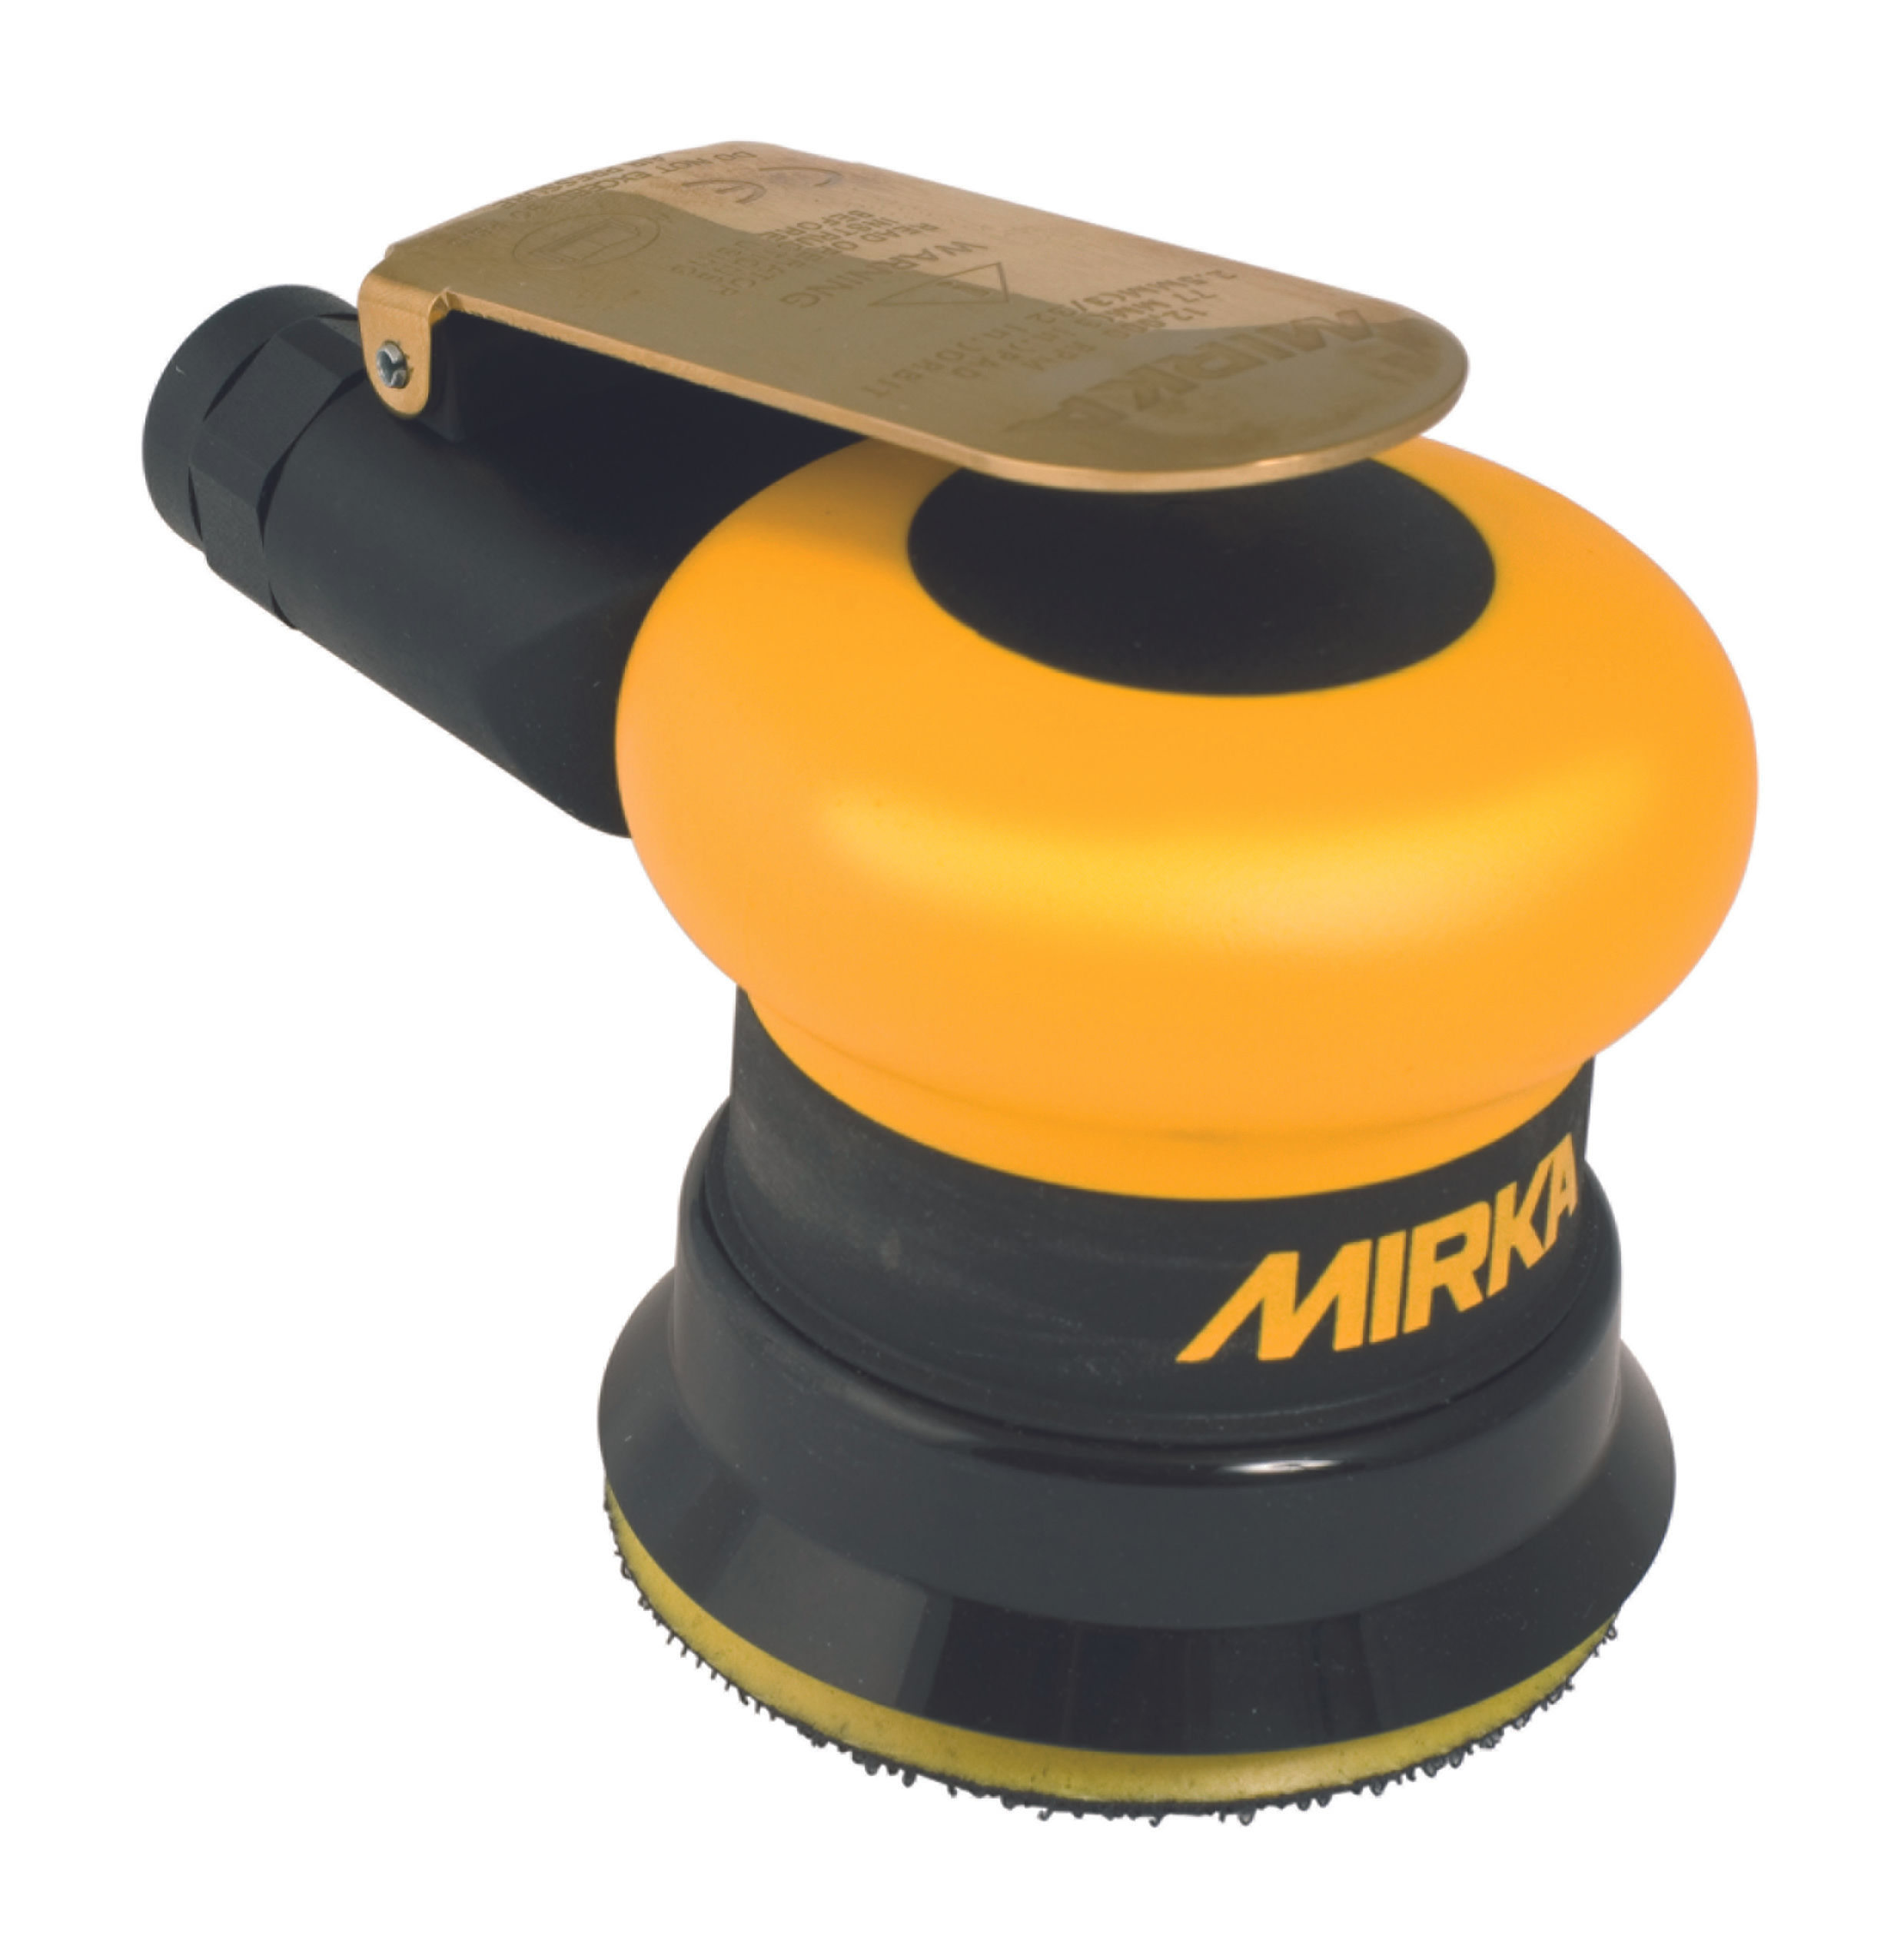 Mirka lanza la nueva lijadora eléctrica para pequeñas reparaciones -  Automoción (fabricación)